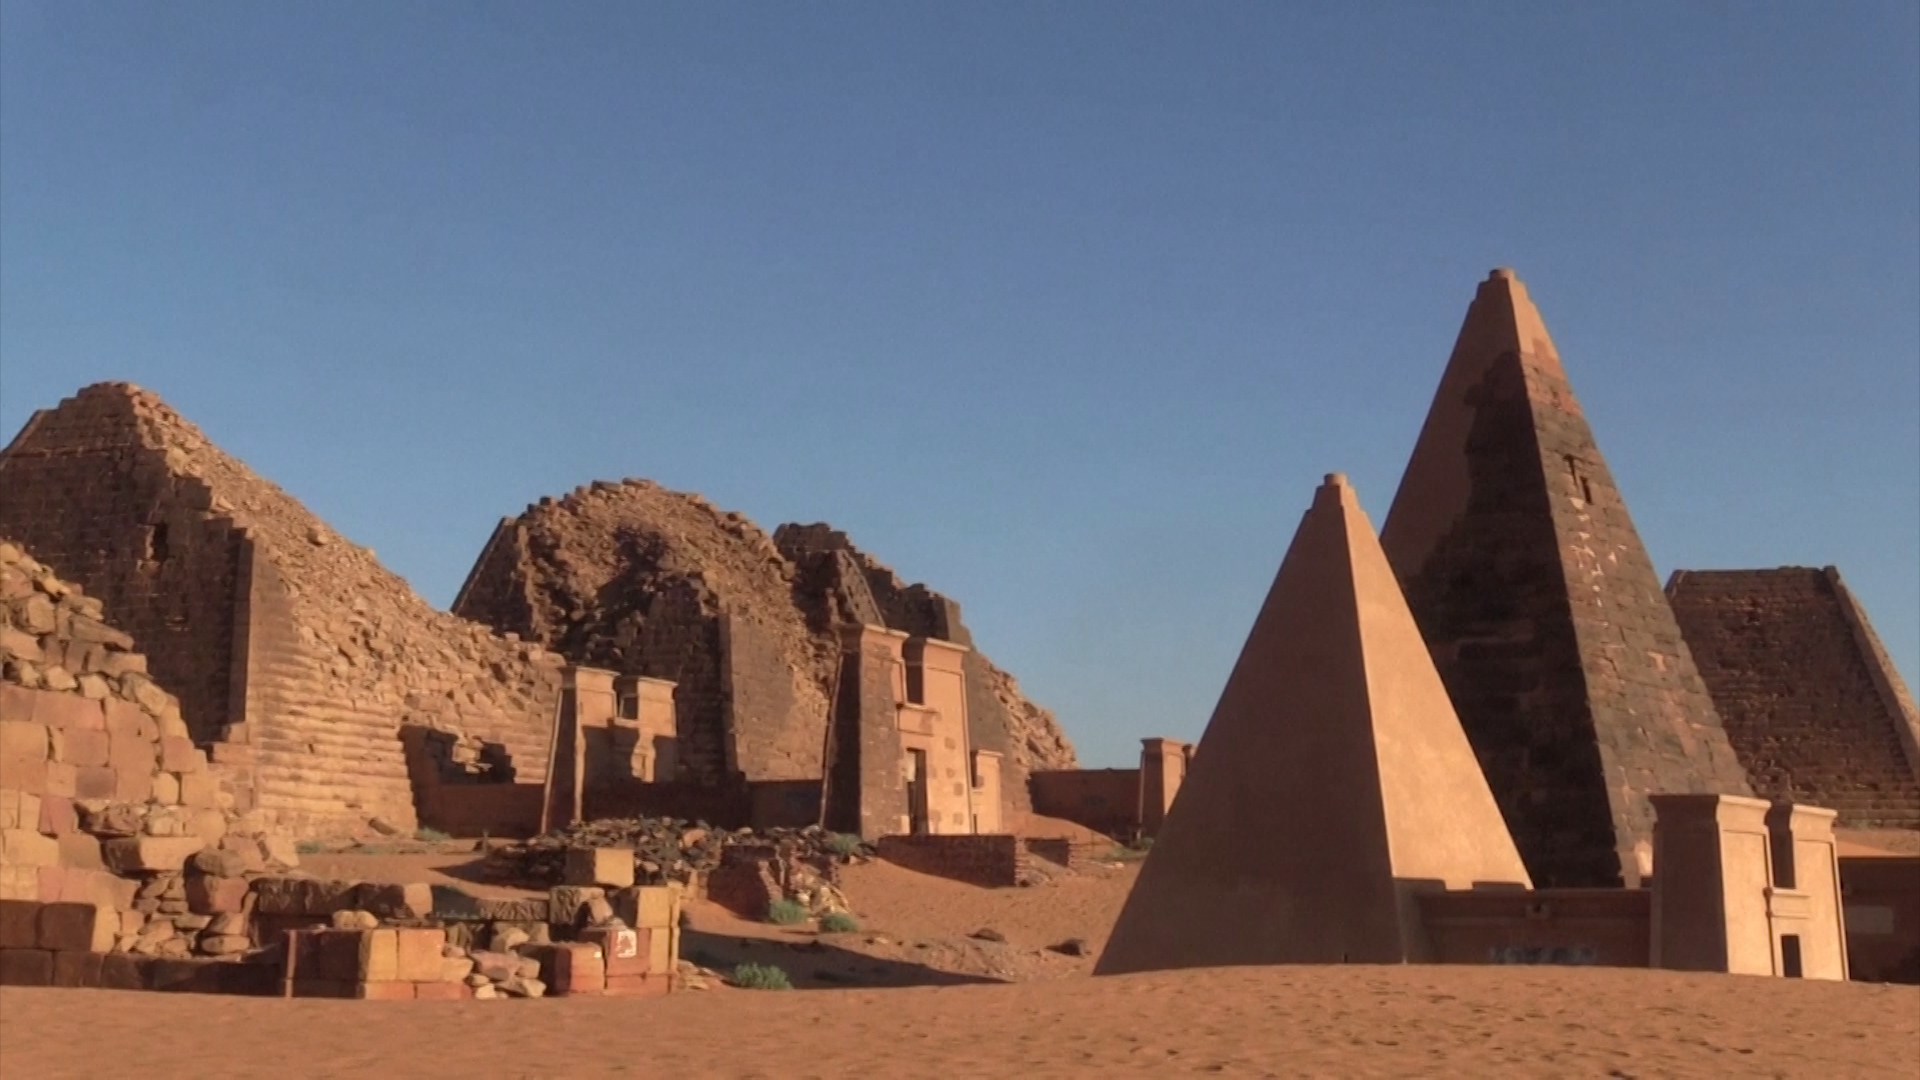 Soedan heeft meer piramides dan Egypte, maar toeristen vind je er amper - De Standaard